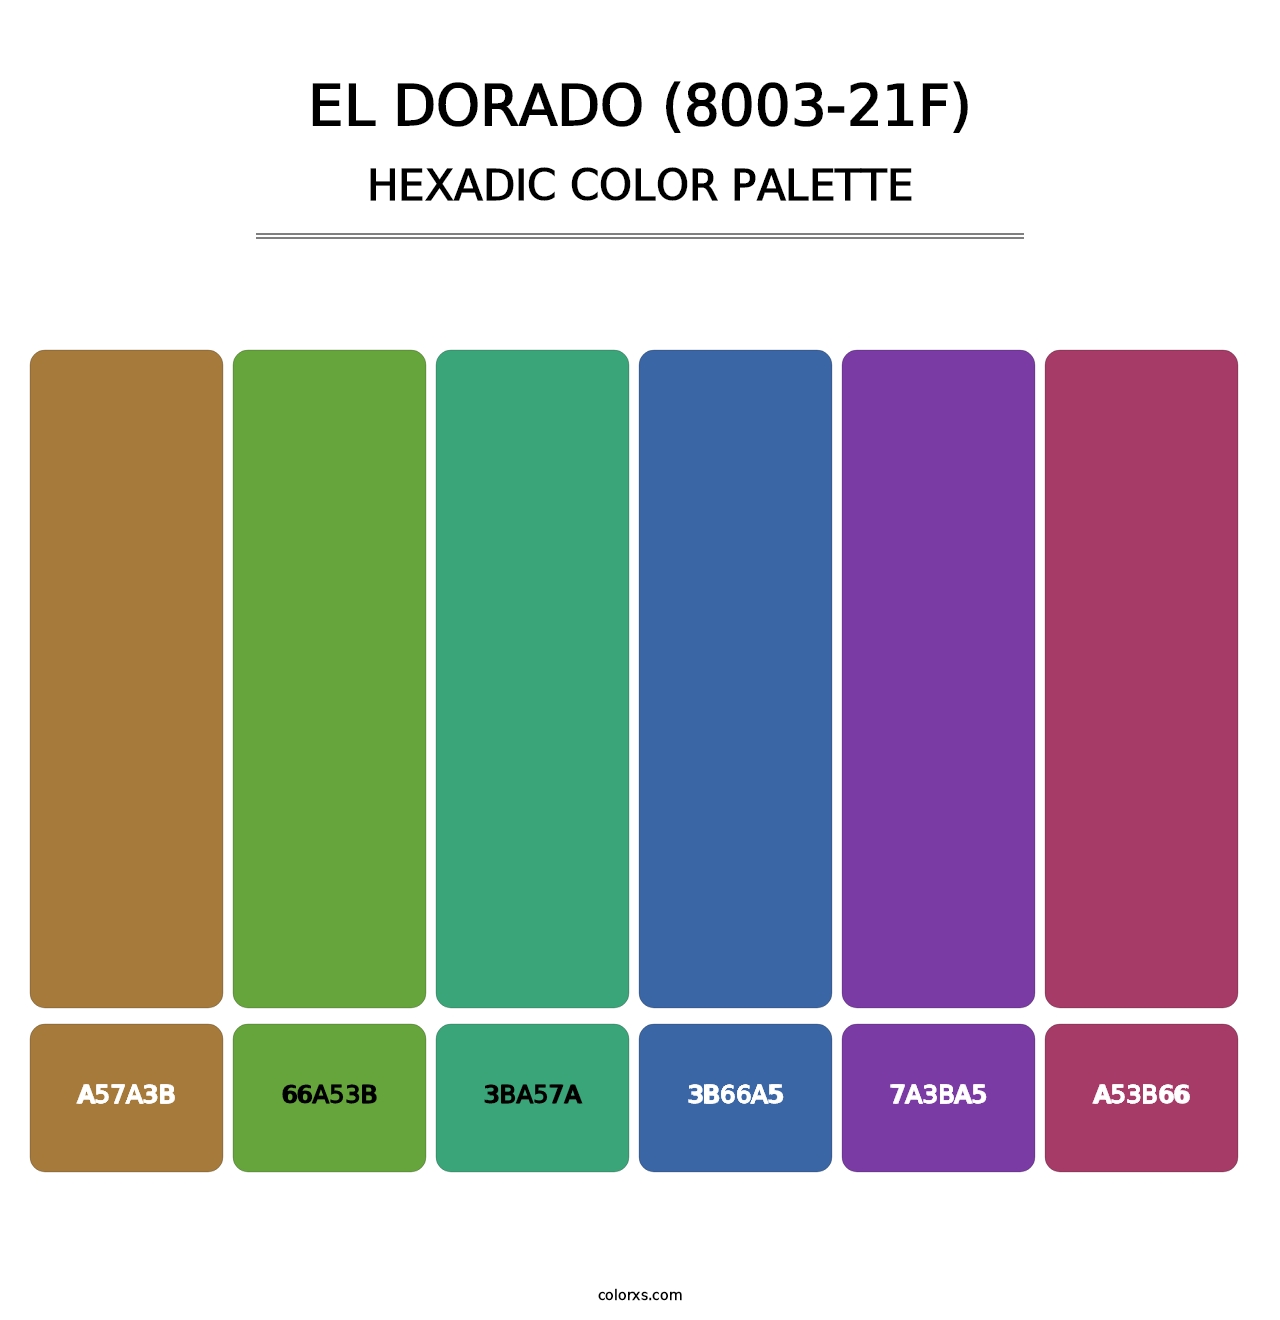 El Dorado (8003-21F) - Hexadic Color Palette